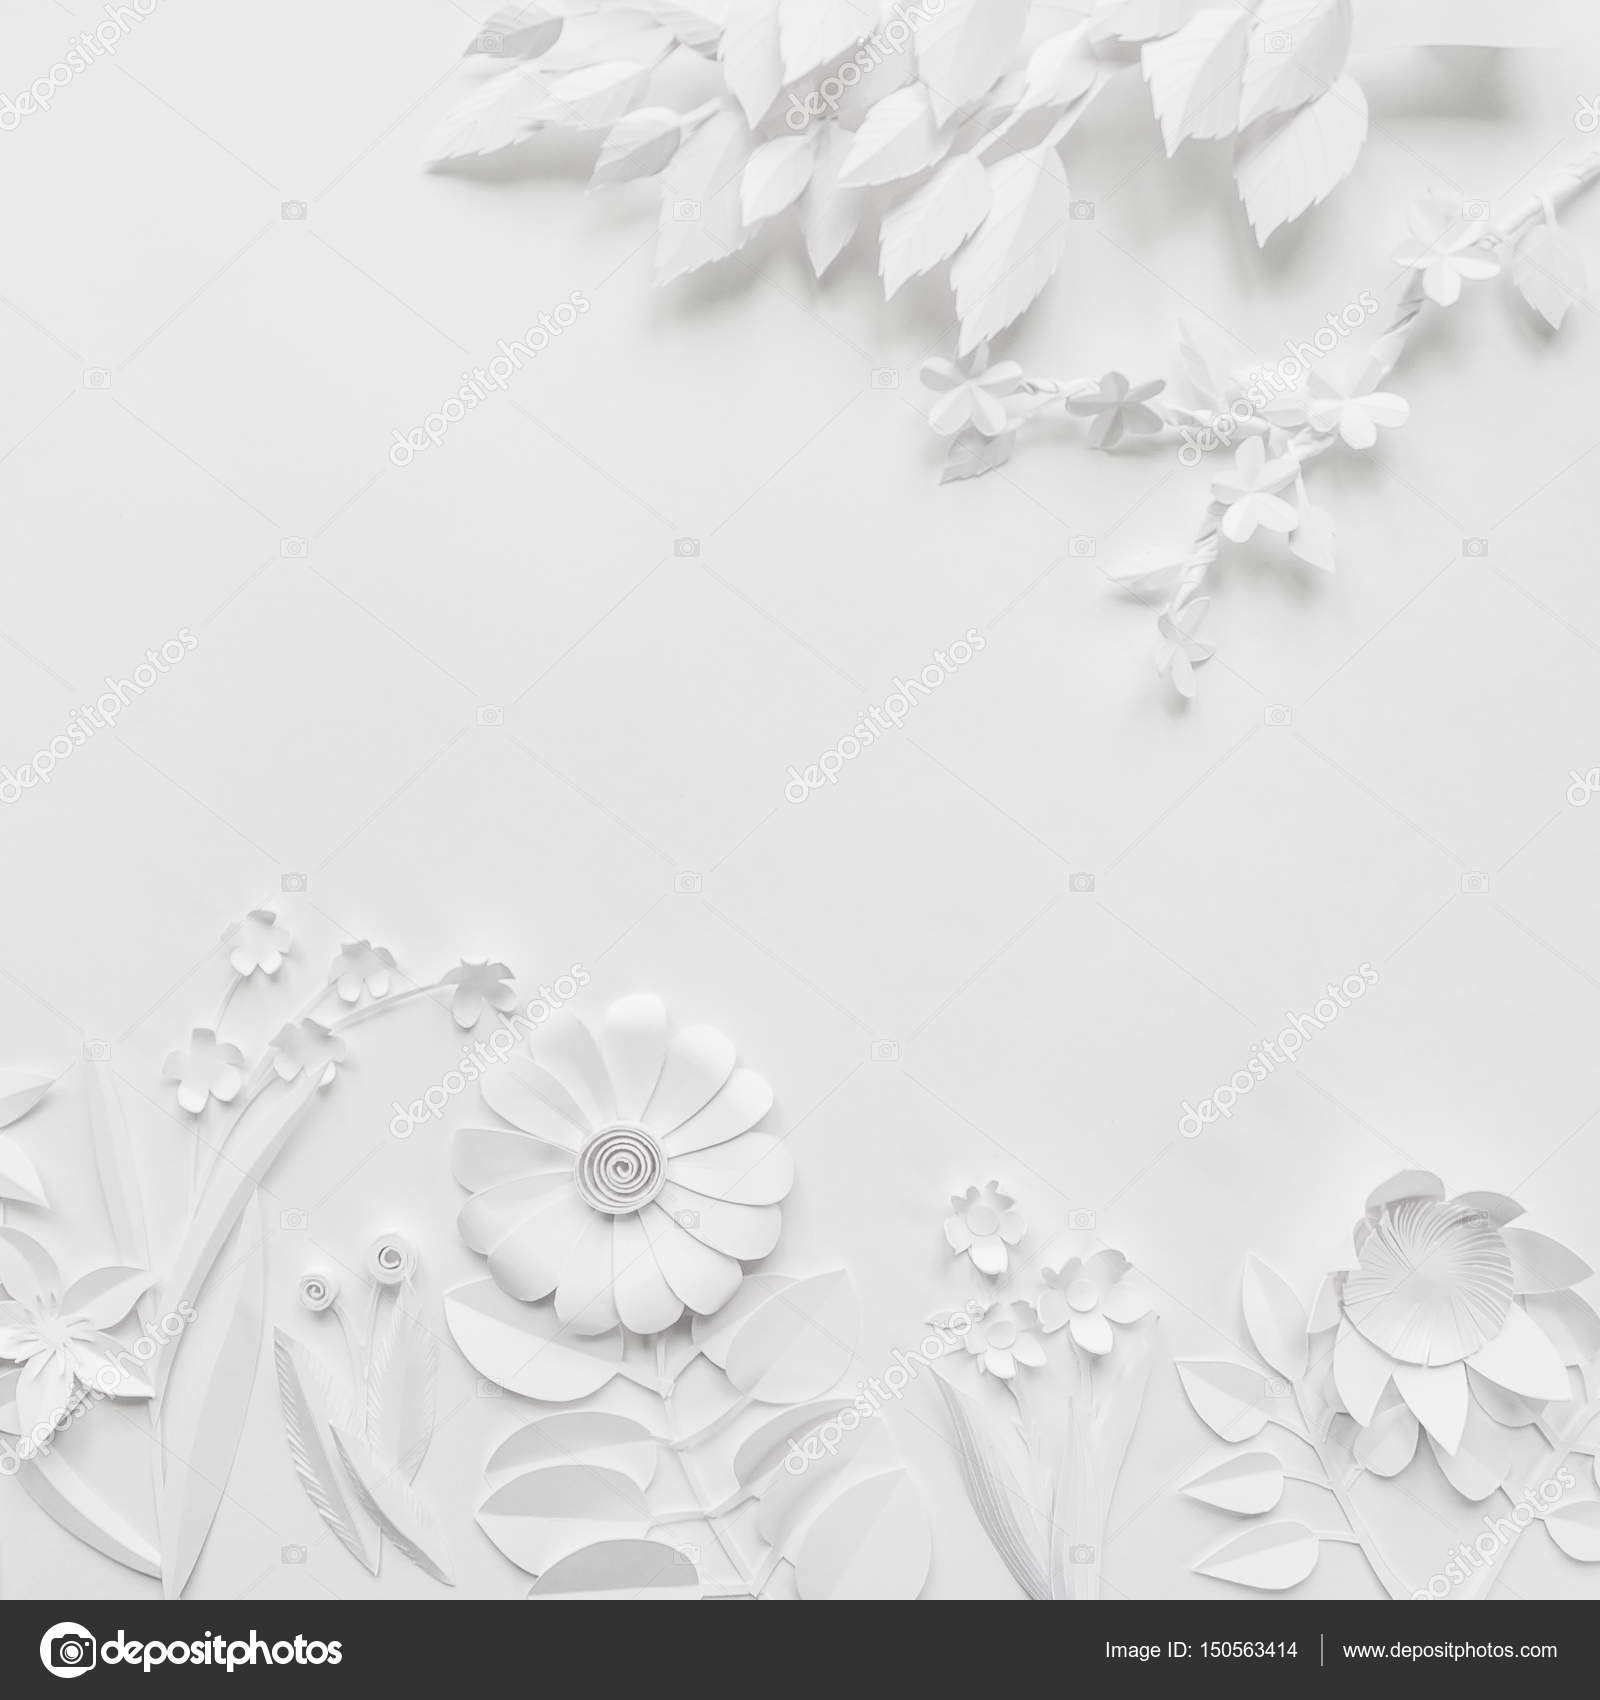 https://st3.depositphotos.com/1091369/15056/i/1600/depositphotos_150563414-stock-photo-white-paper-flowers-wallpaper-spring.jpg